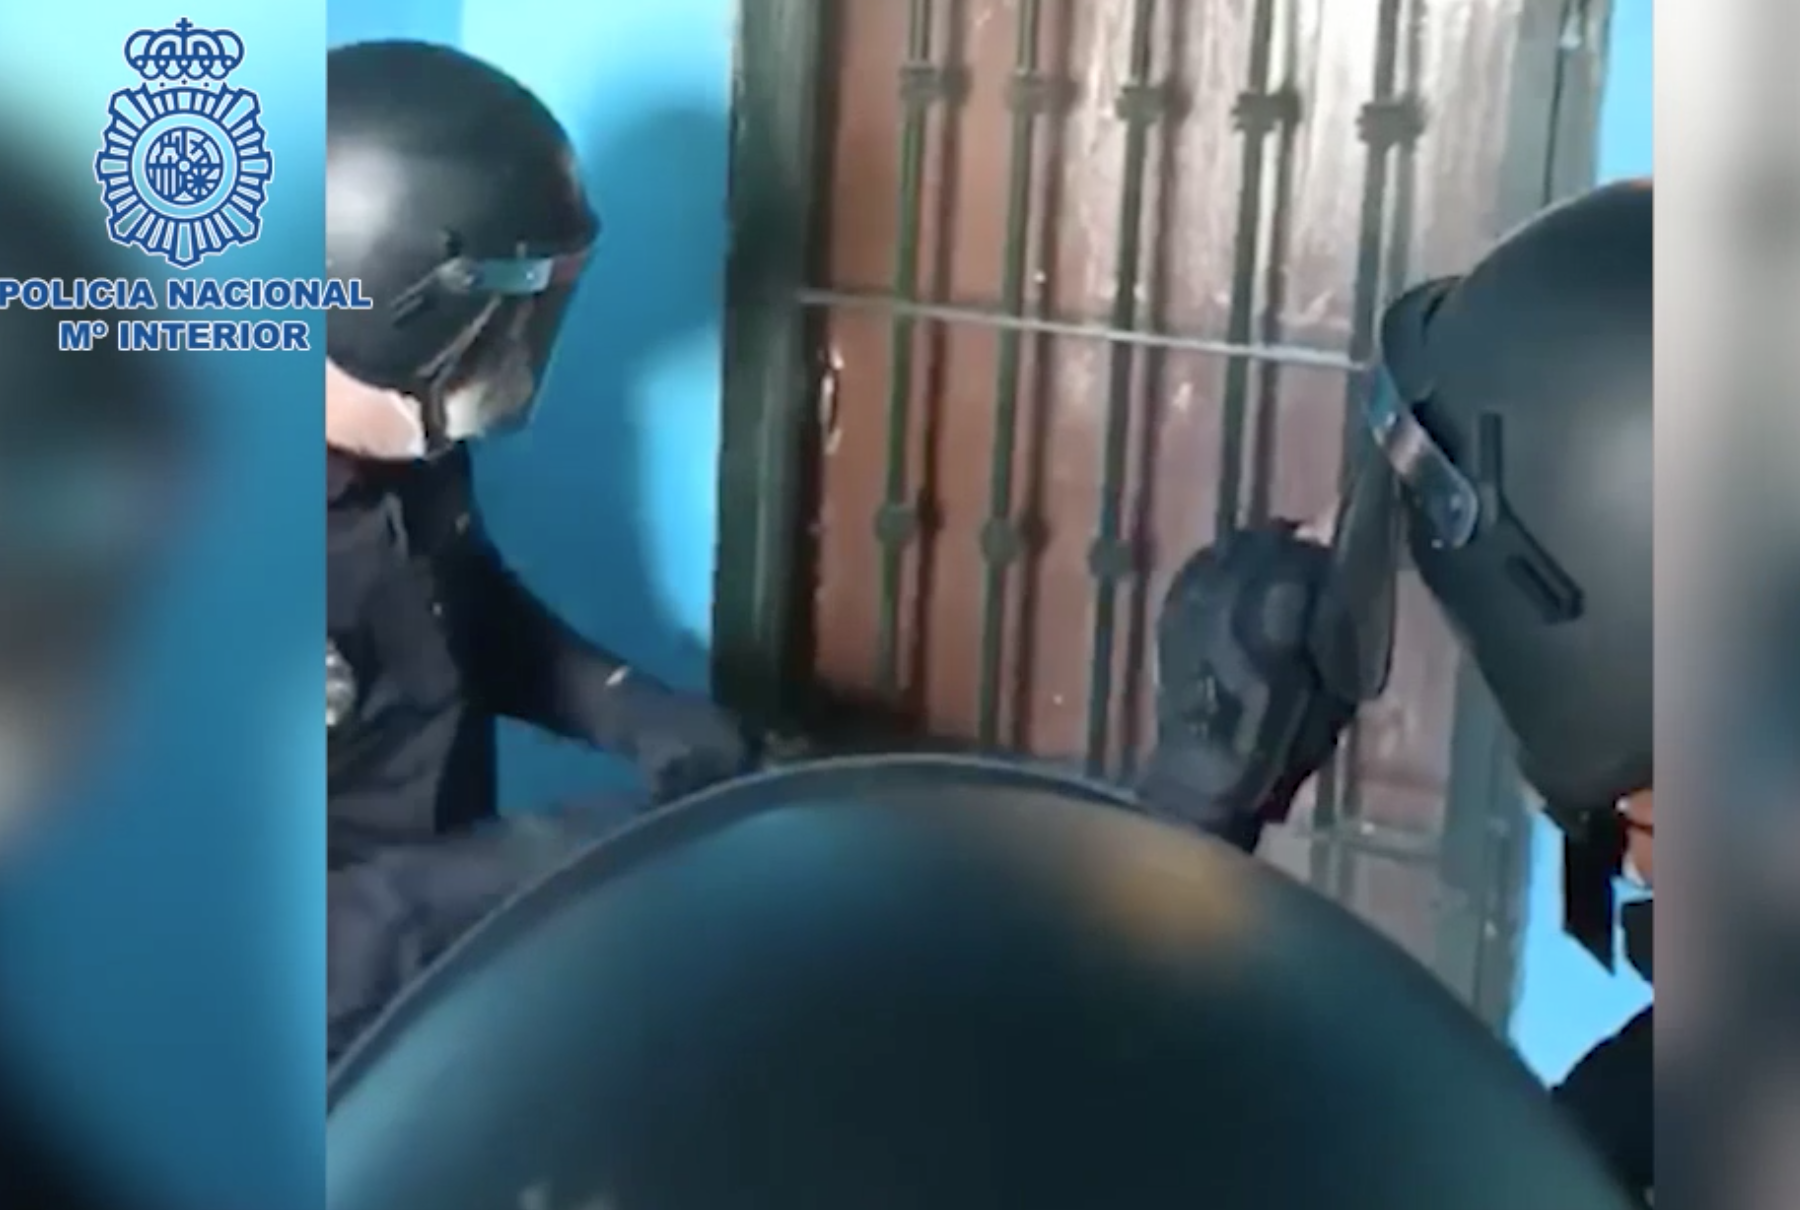 La Policía Nacional, entrando en un punto de venta de droga de El Puerto.